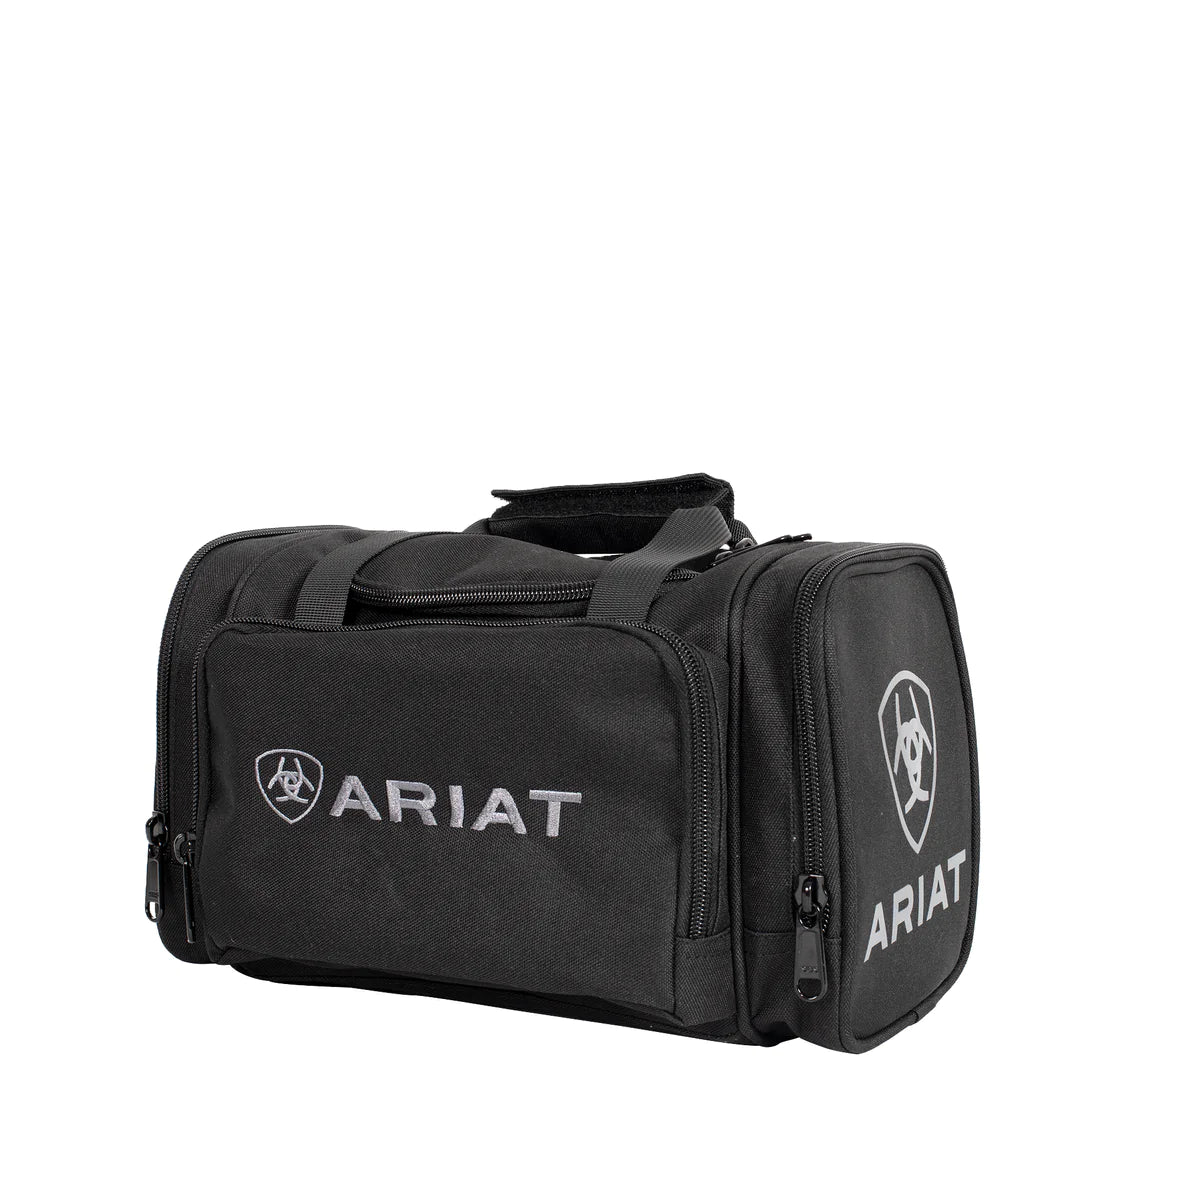 Ariat Unisex Vanity Bag - Black